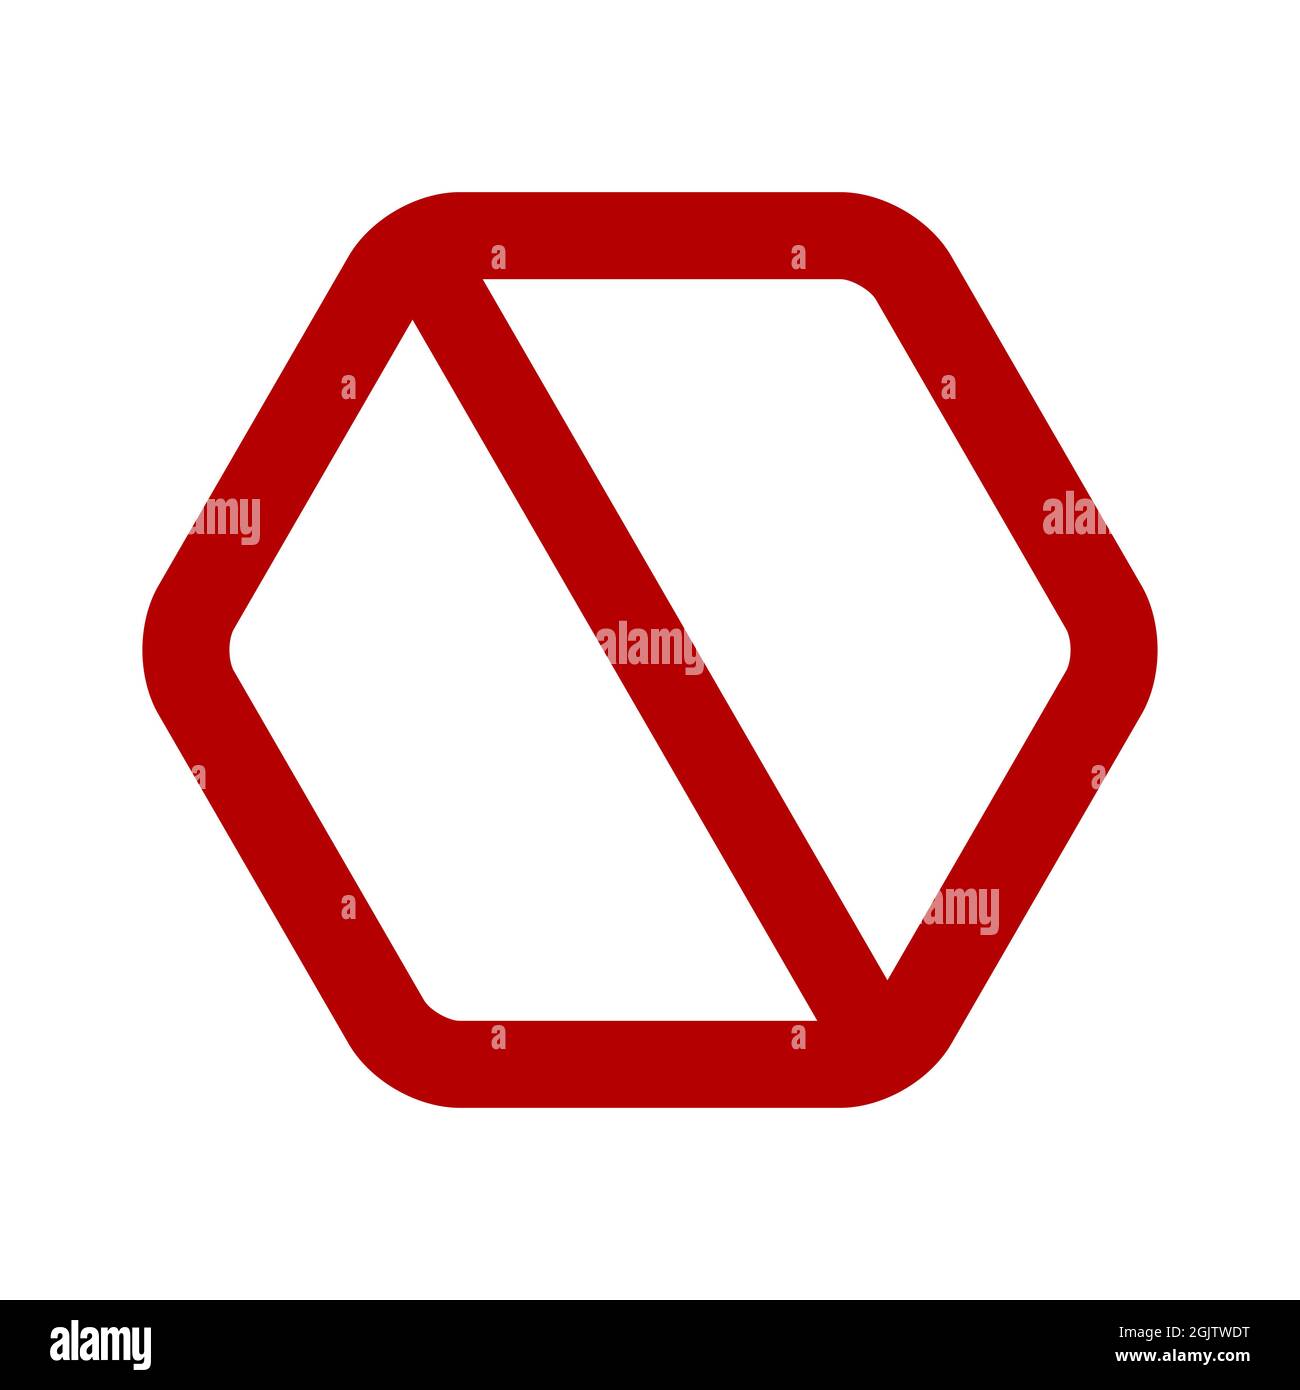 Hexagonal prohibition sign. No symbol, do not sign, backslash symbol, nay, interdictory prohibited symbol, dont do it symbol isolated on white. illust Stock Photo